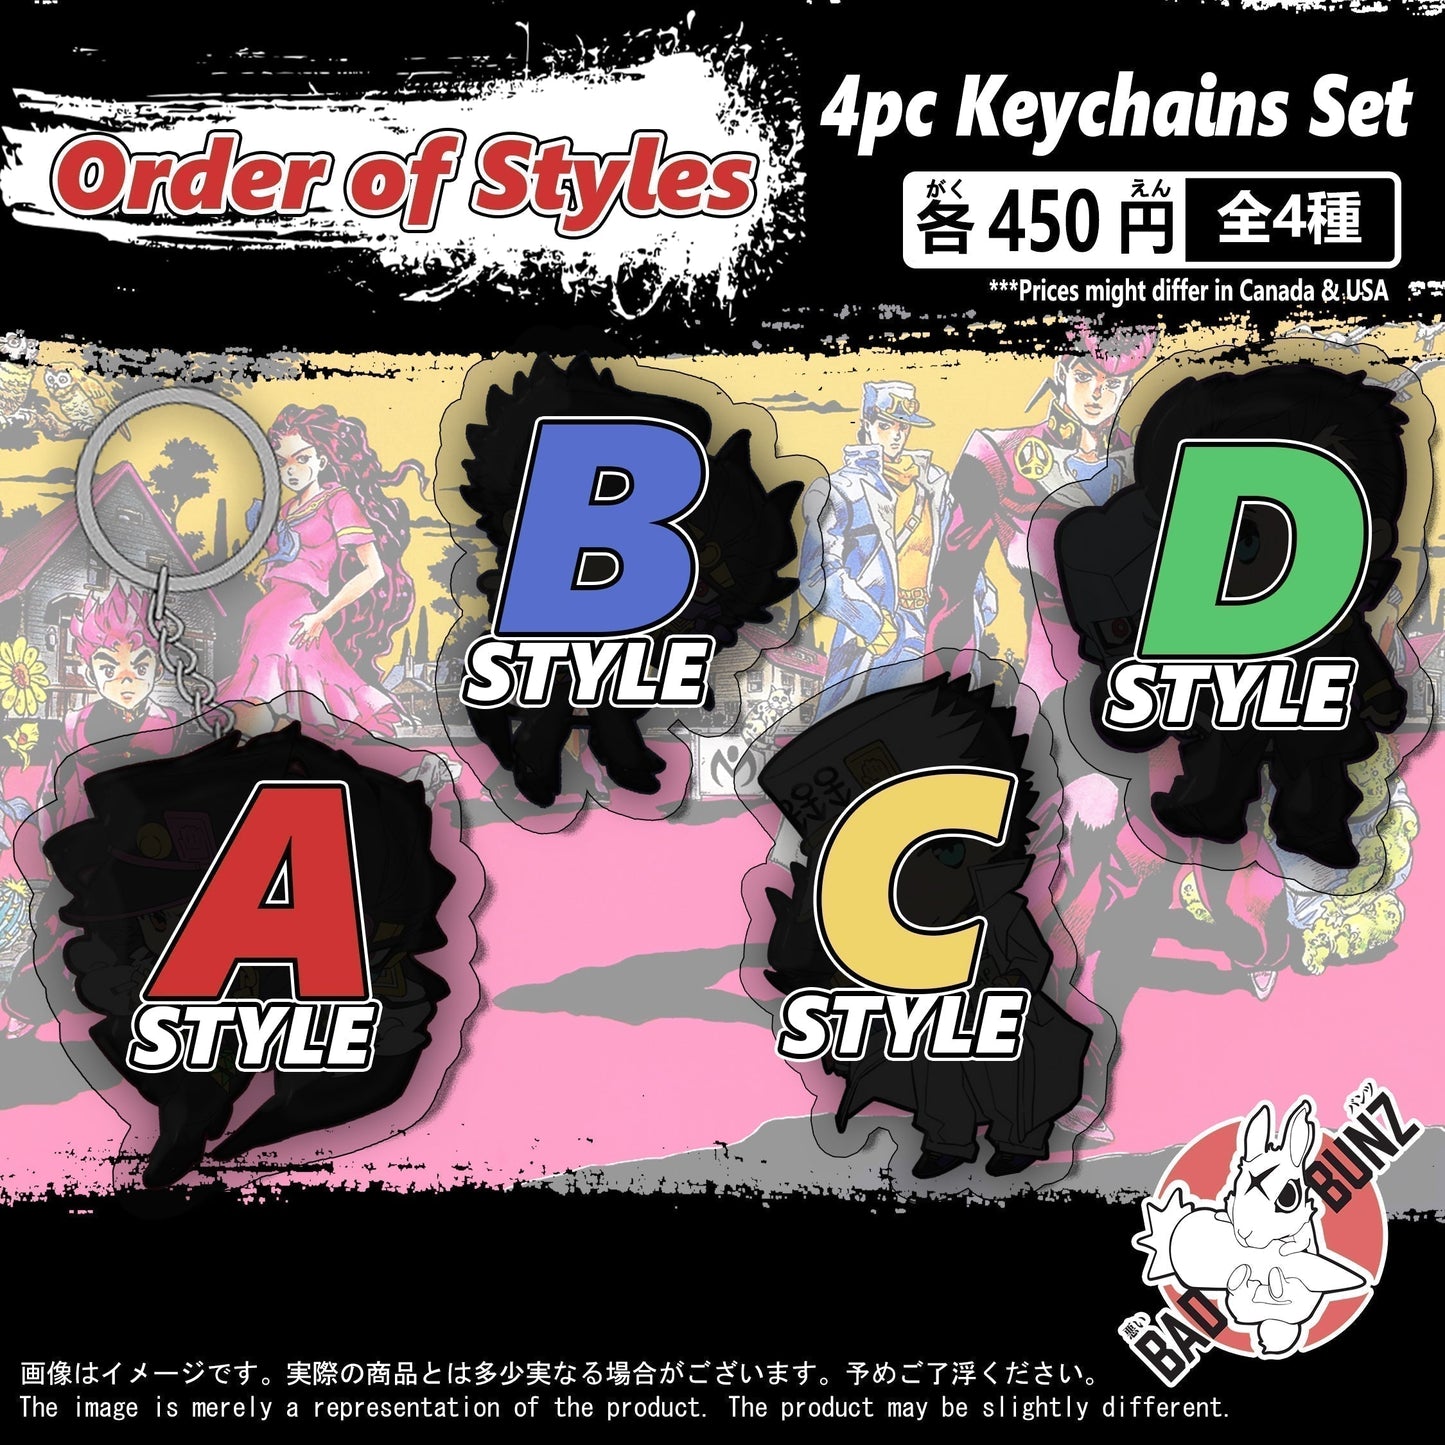 (DBZ-01KC) Dragon Ball Z Anime Double-Sided Acrylic Keychain Set